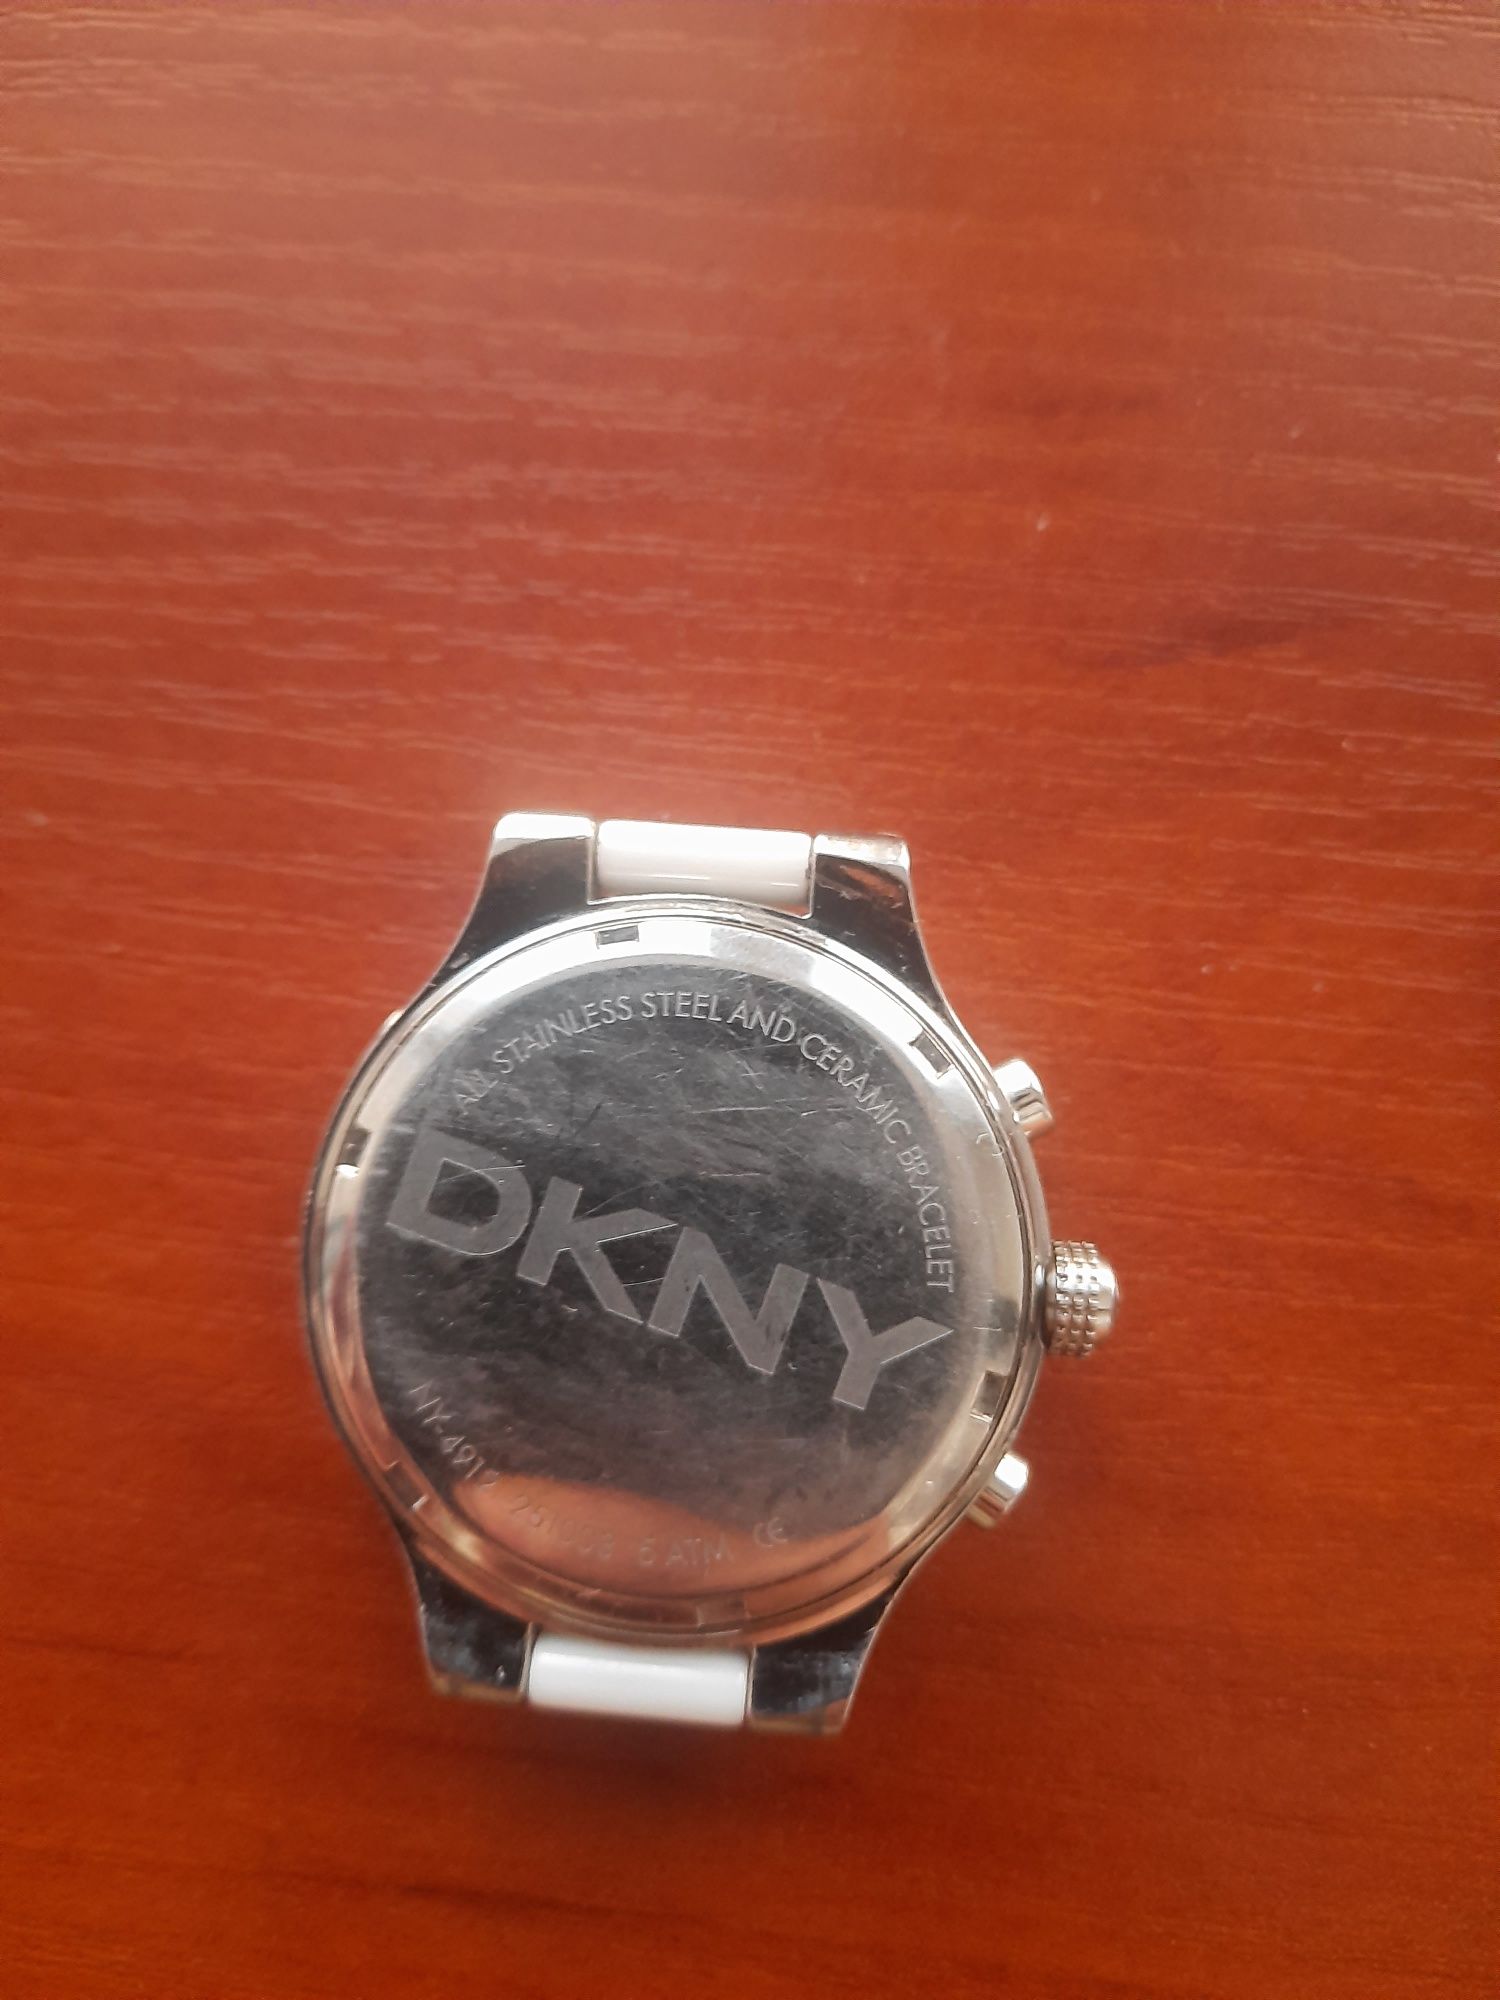 Часы женские DKNY ceramic кварц